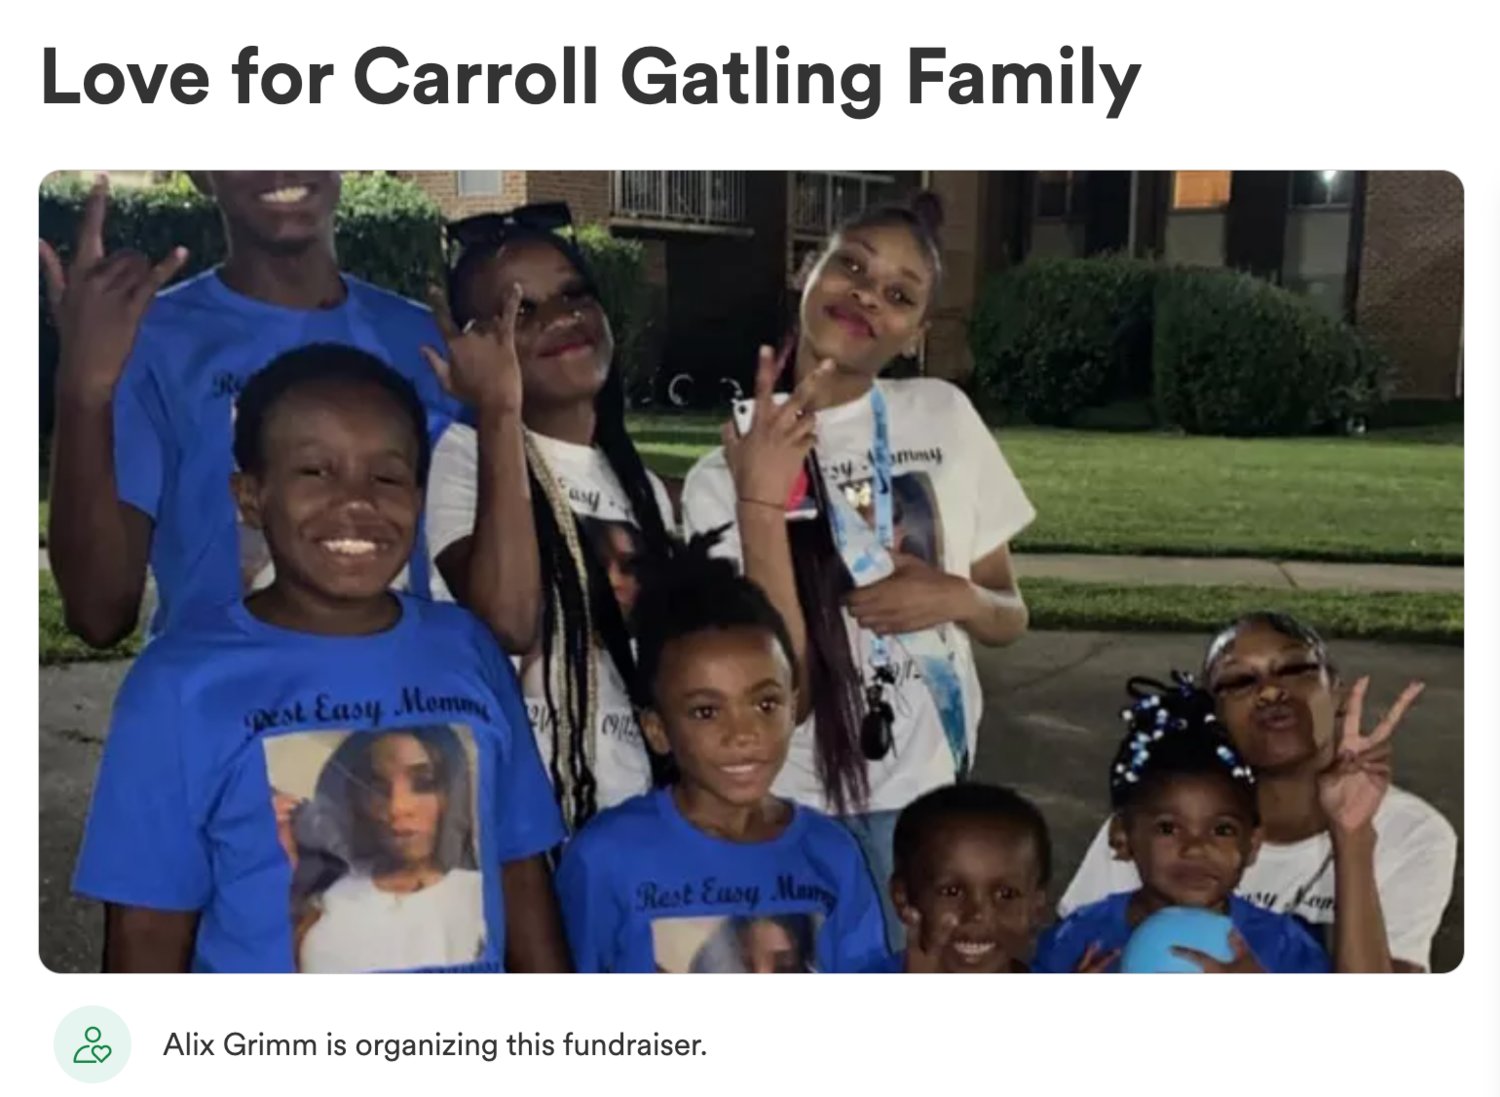 Member of the Carroll-Gatling Family